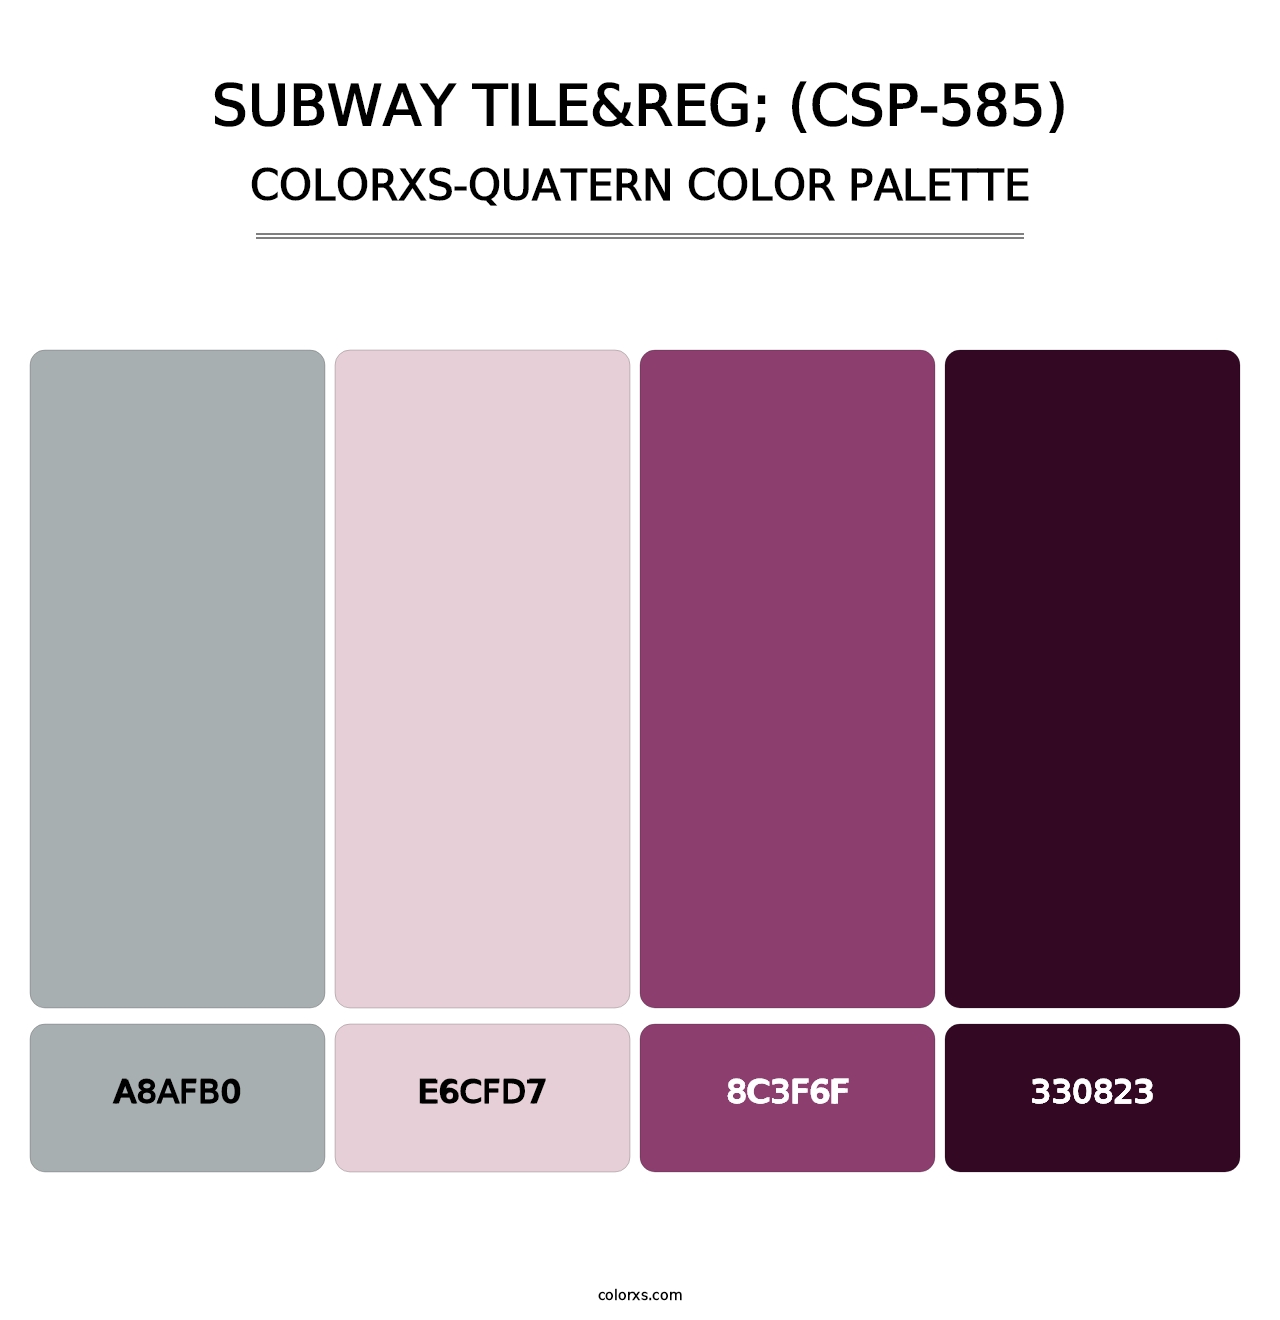 Subway Tile&reg; (CSP-585) - Colorxs Quatern Palette